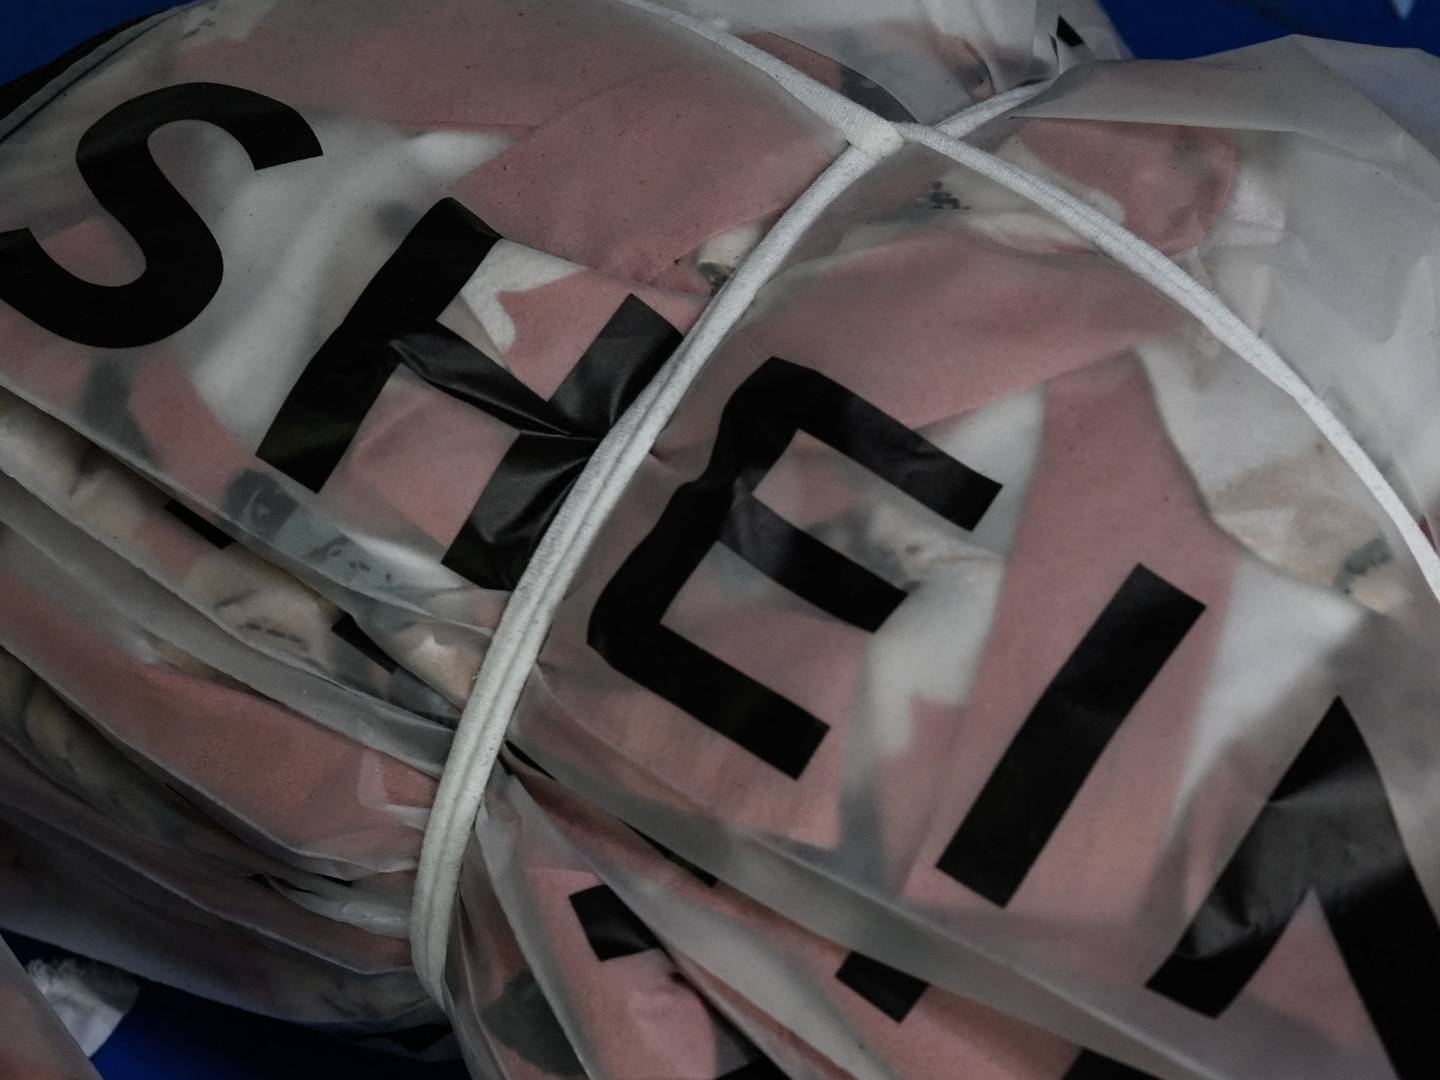 kabine Tøj peeling Dokumentar afslører urimelige arbejdsvilkår hos Shein — DetailWatch